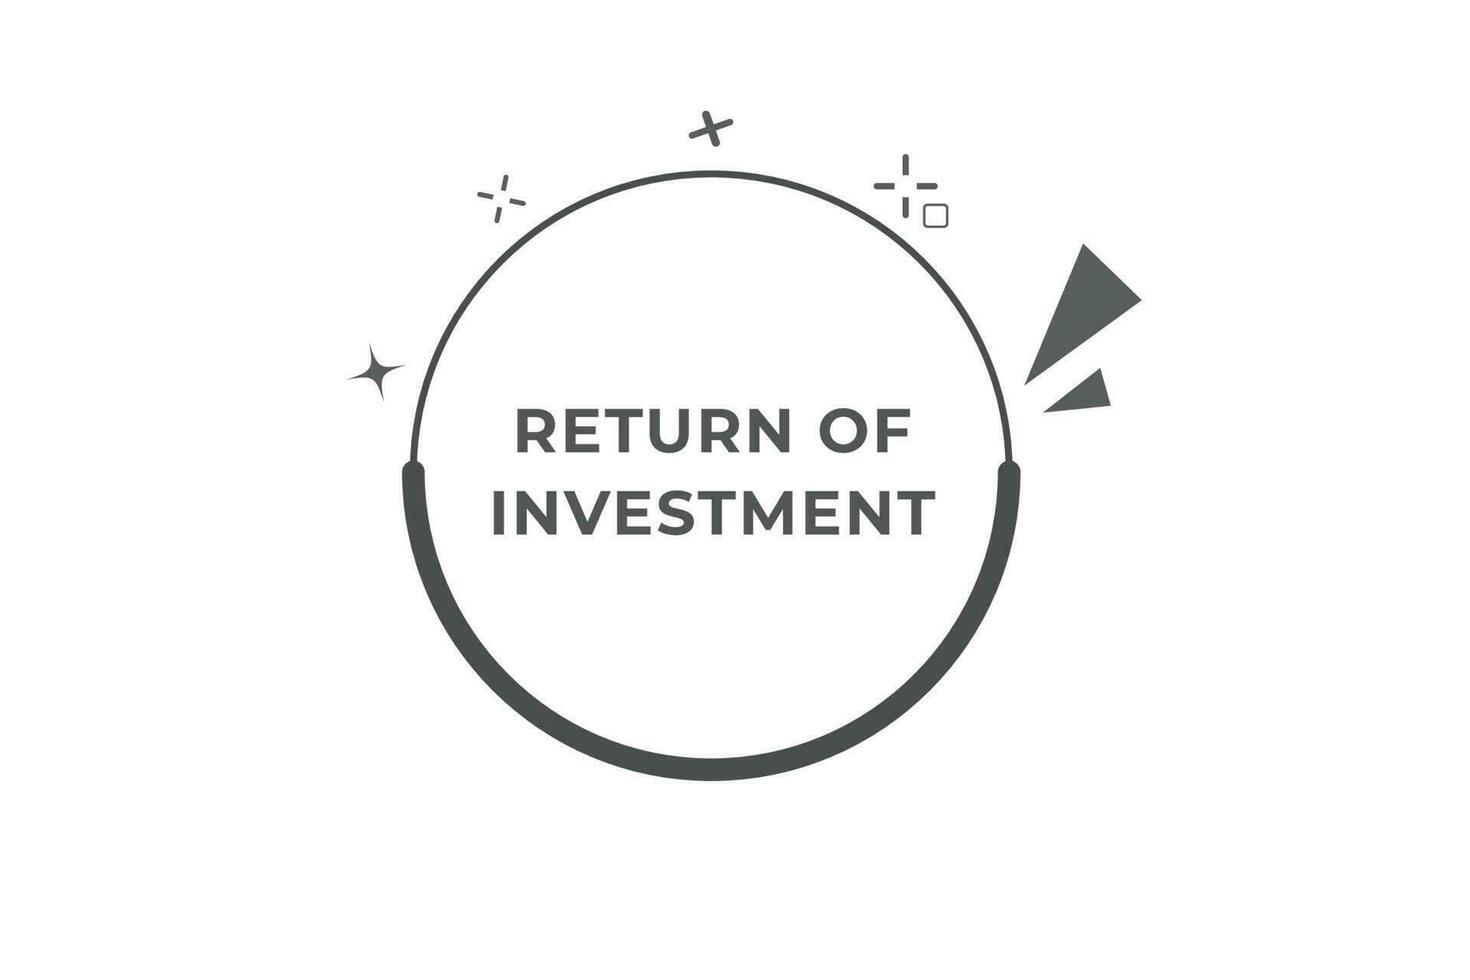 regreso de inversión botón. habla burbuja, bandera etiqueta regreso de inversión vector